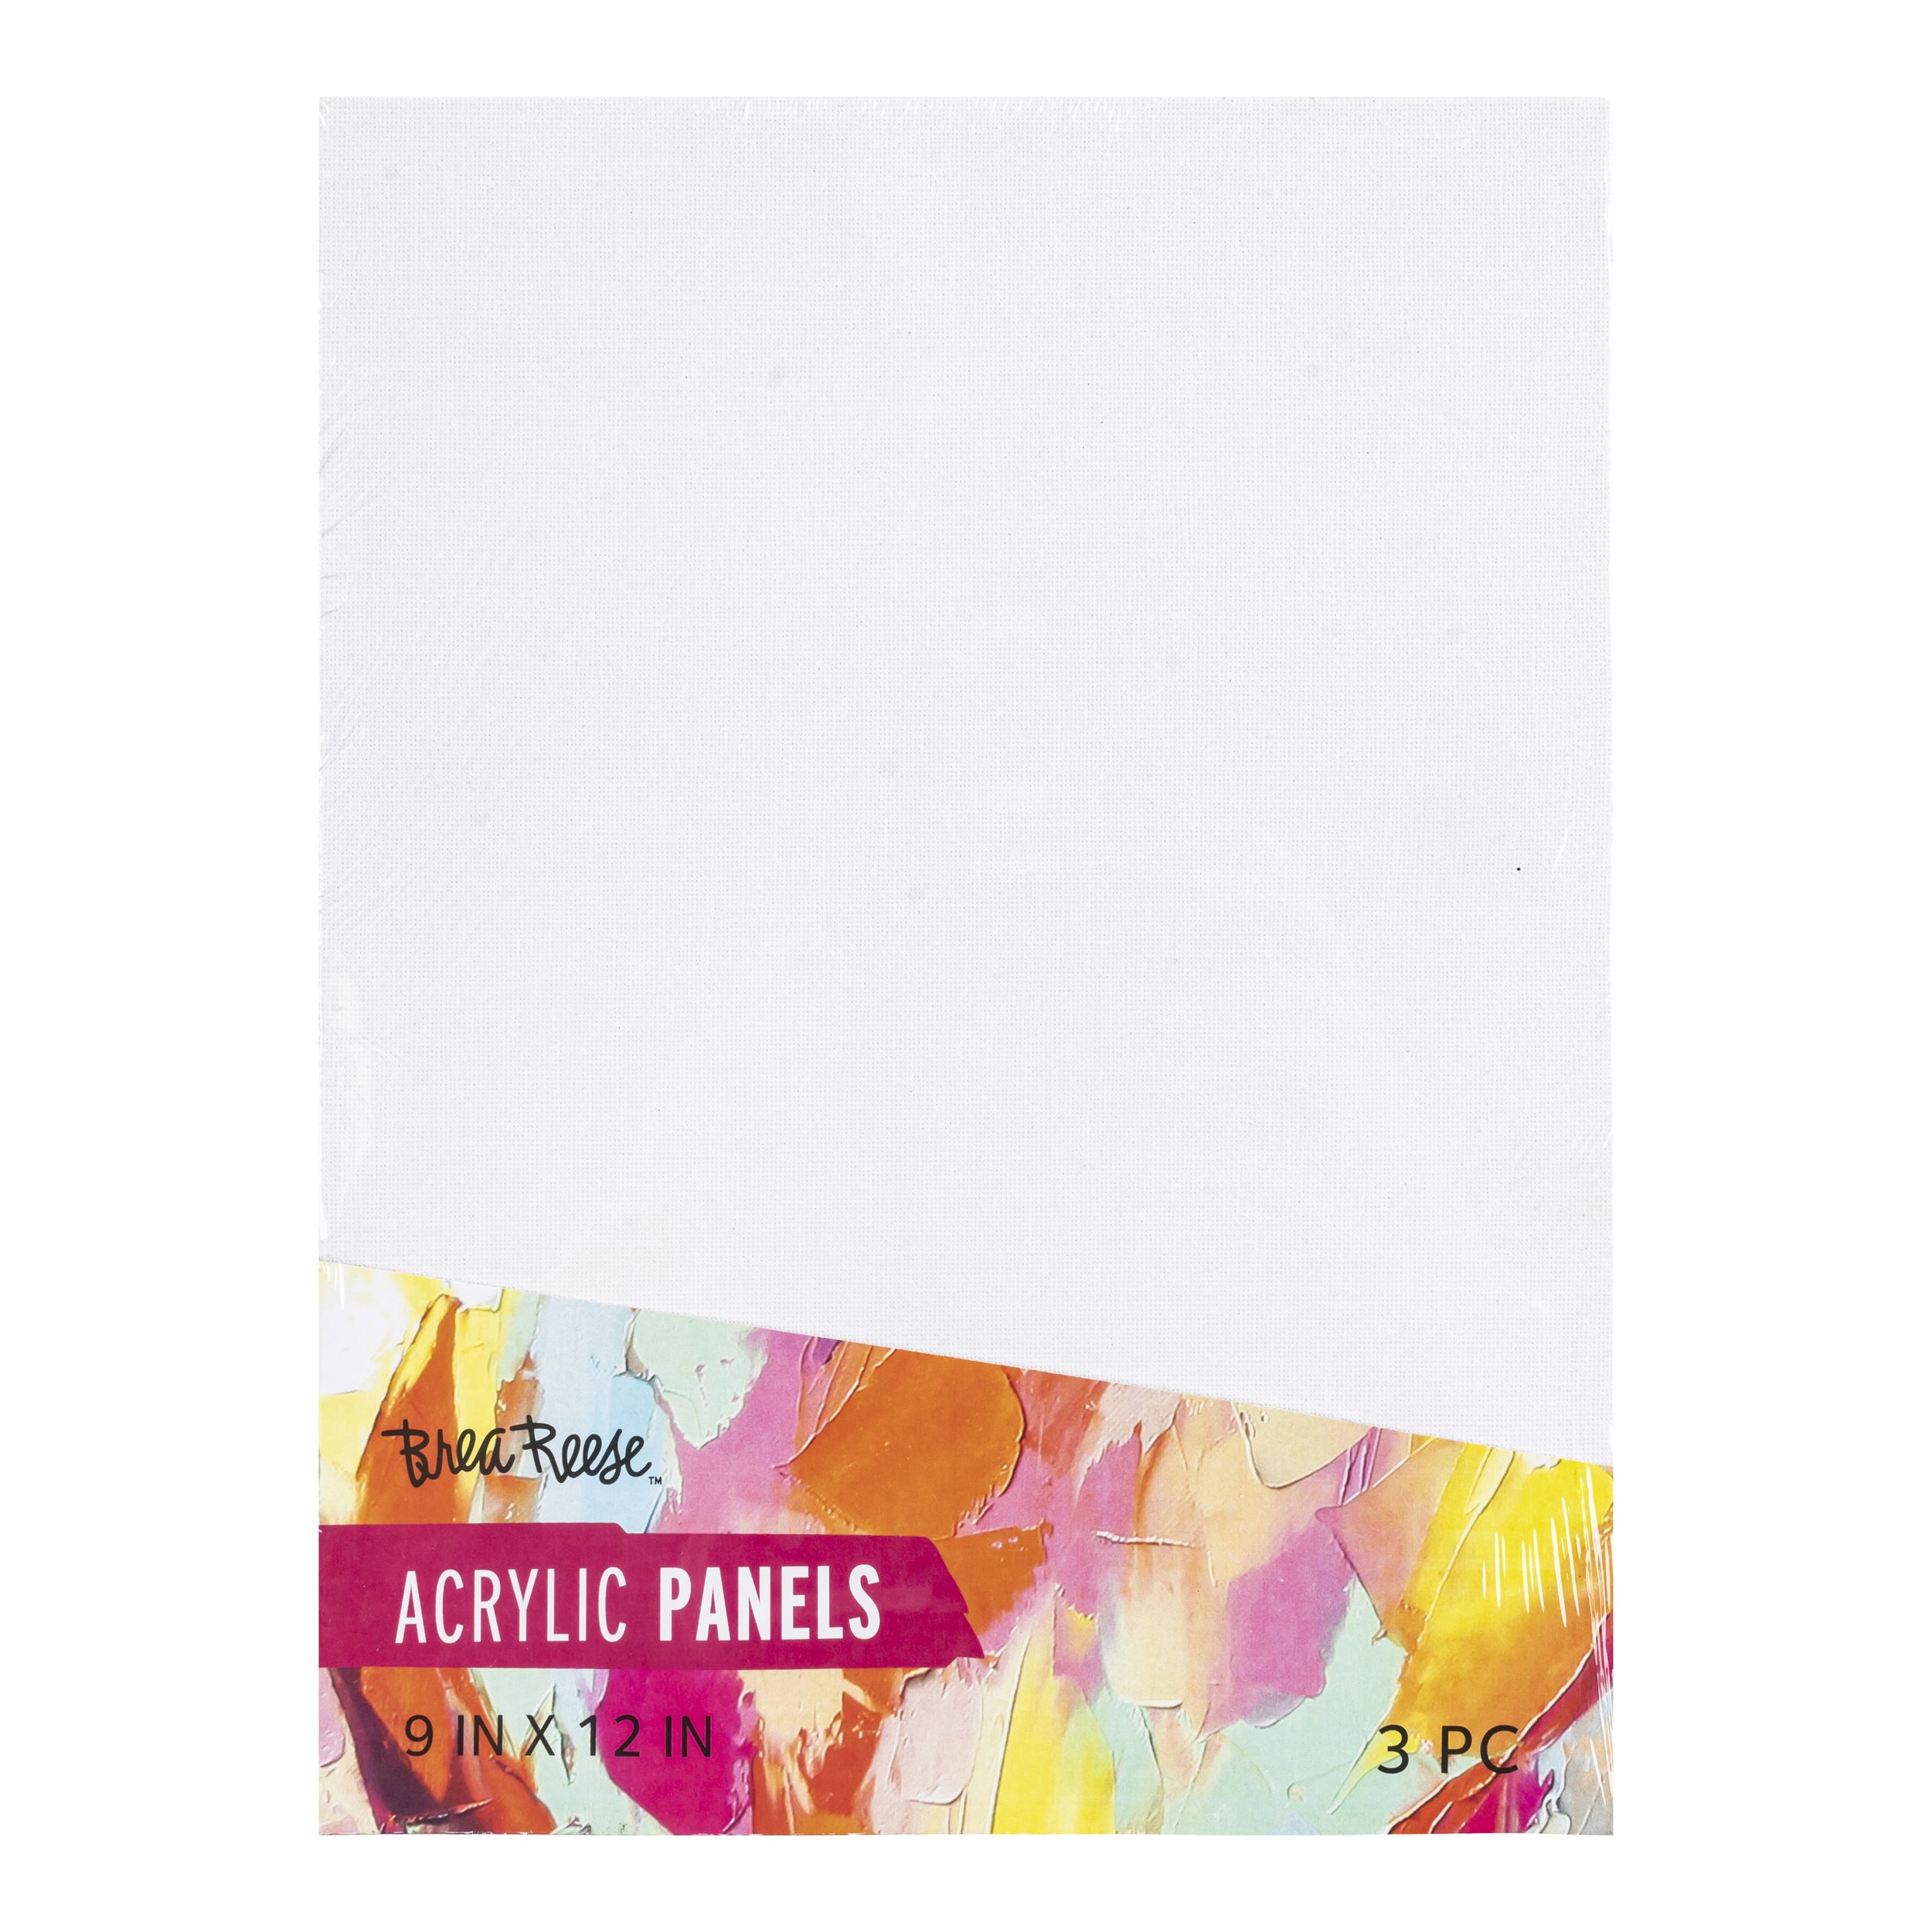 Brea Reese™ Josie Lewis™ Watercolor Paper Pad, 9 x 12